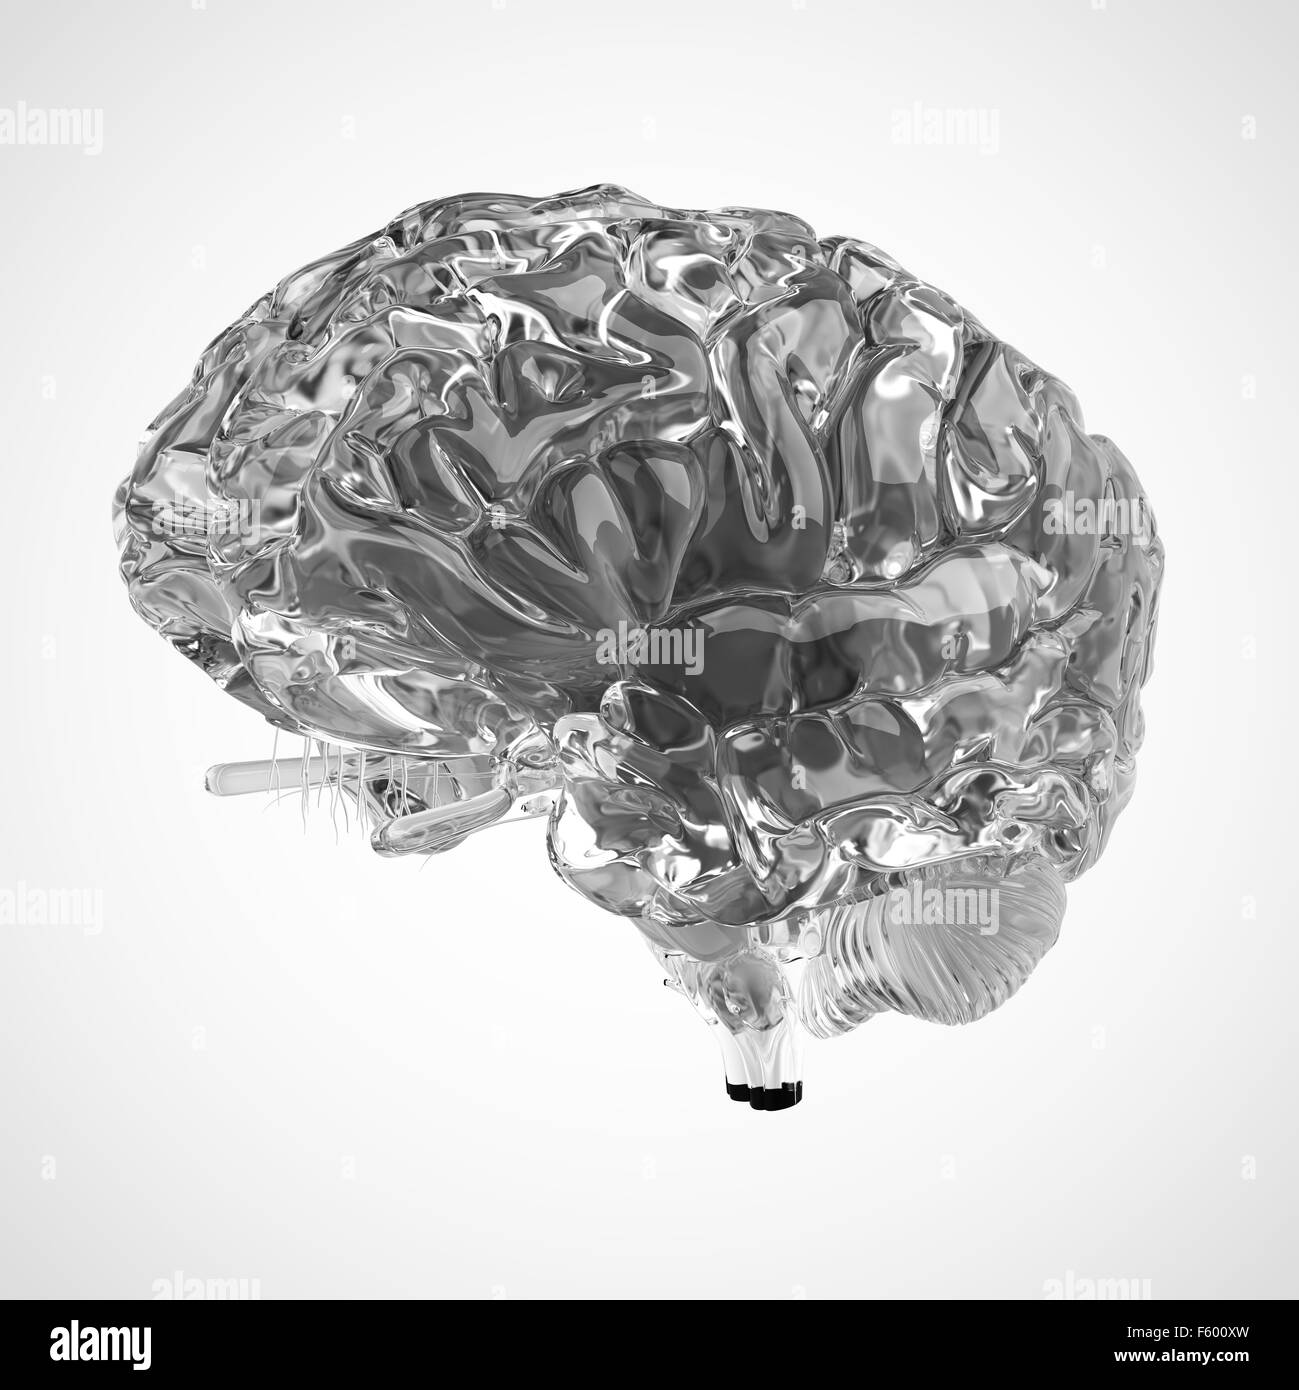 Dal punto di vista medico illustrazione accurata di un cervello glas Foto Stock